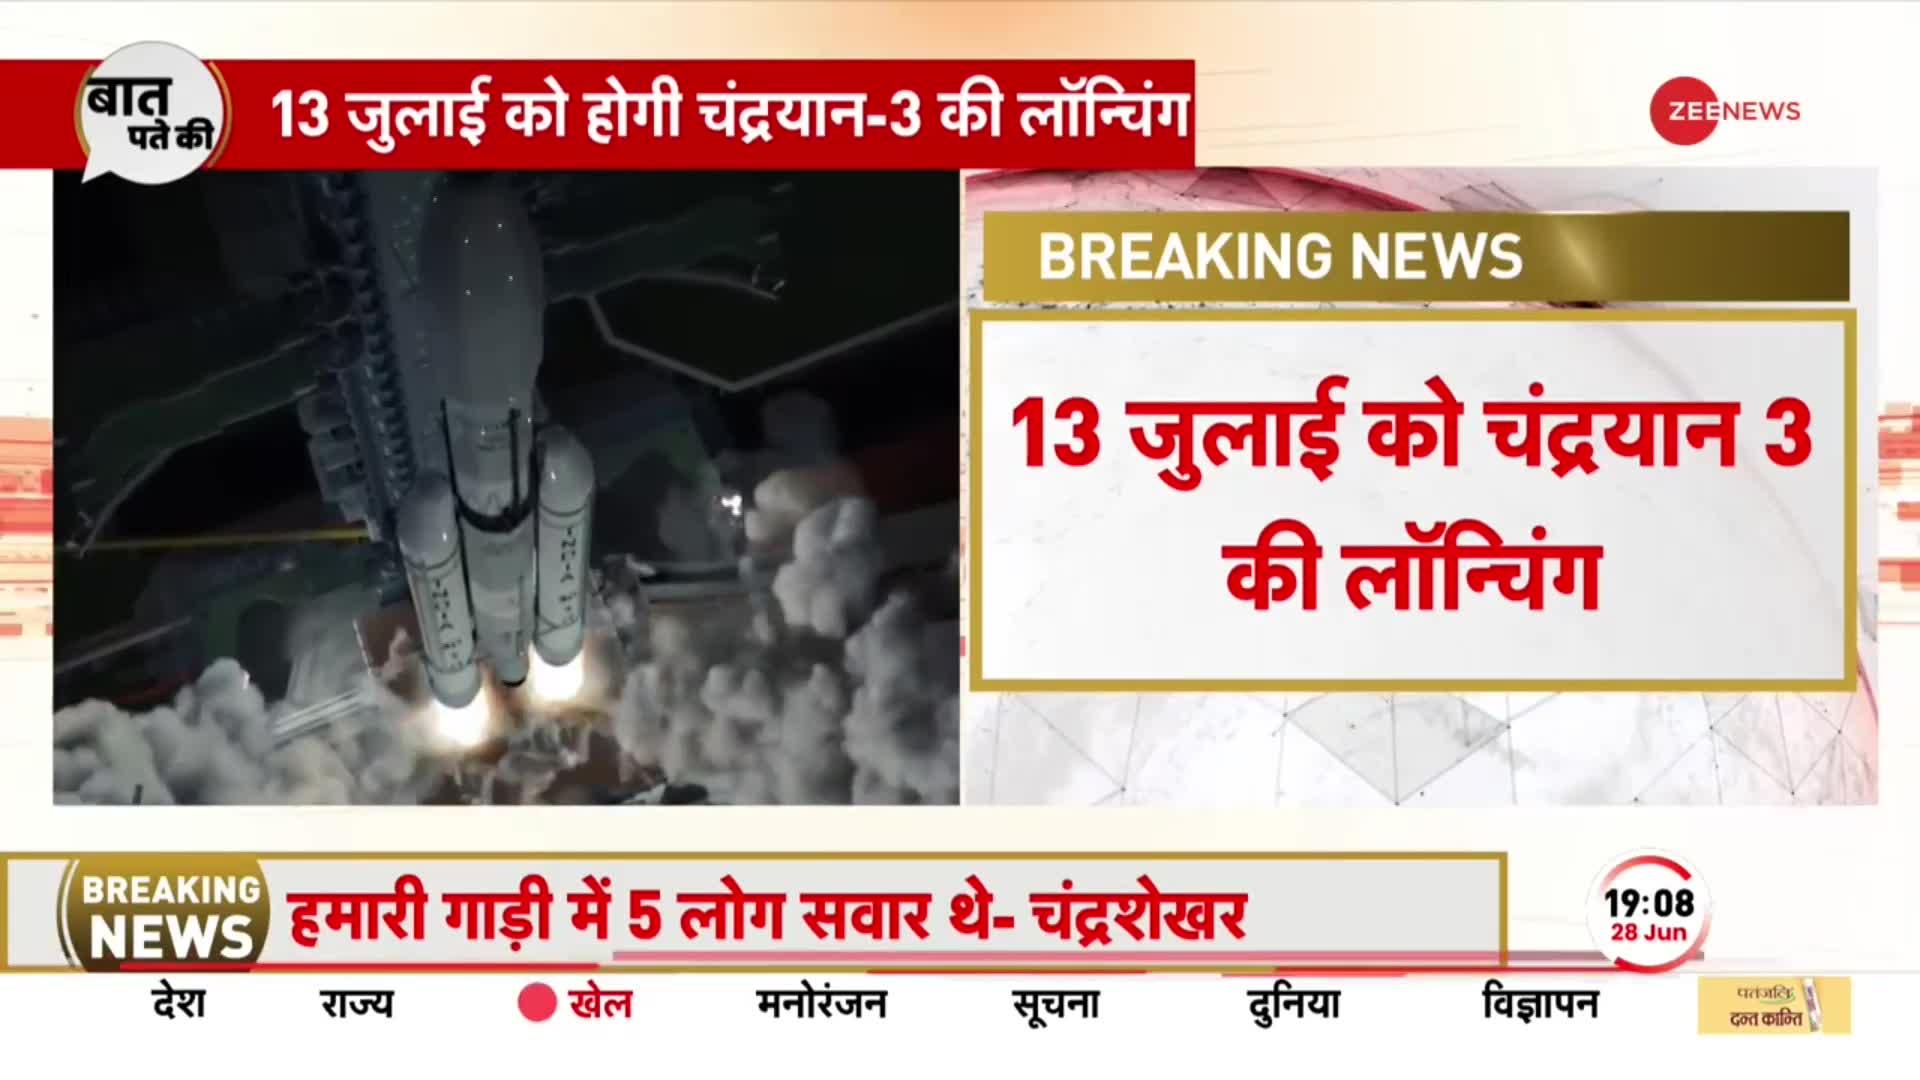 Breaking News चंद्रयान-3 पर सबसे बड़ा अपडेट, 13 जुलाई को होगी लॉन्चिंग